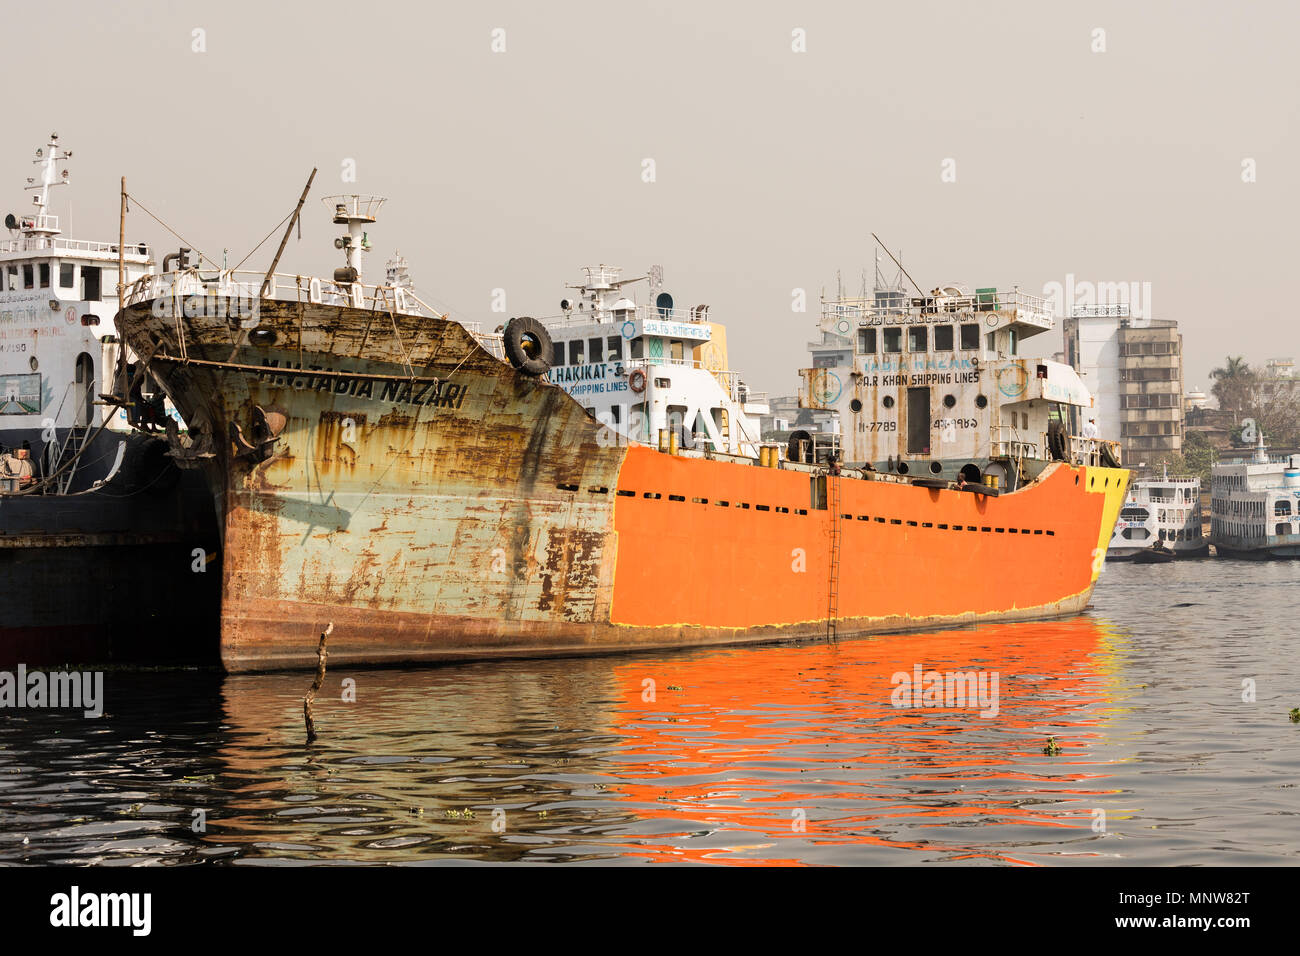 Dhaka, Bangladesh, le 24 février 2017 à Dhaka, Bangladesh, chantier naval : où sur un navire à la protection contre la rouille orange a été appliquée Banque D'Images